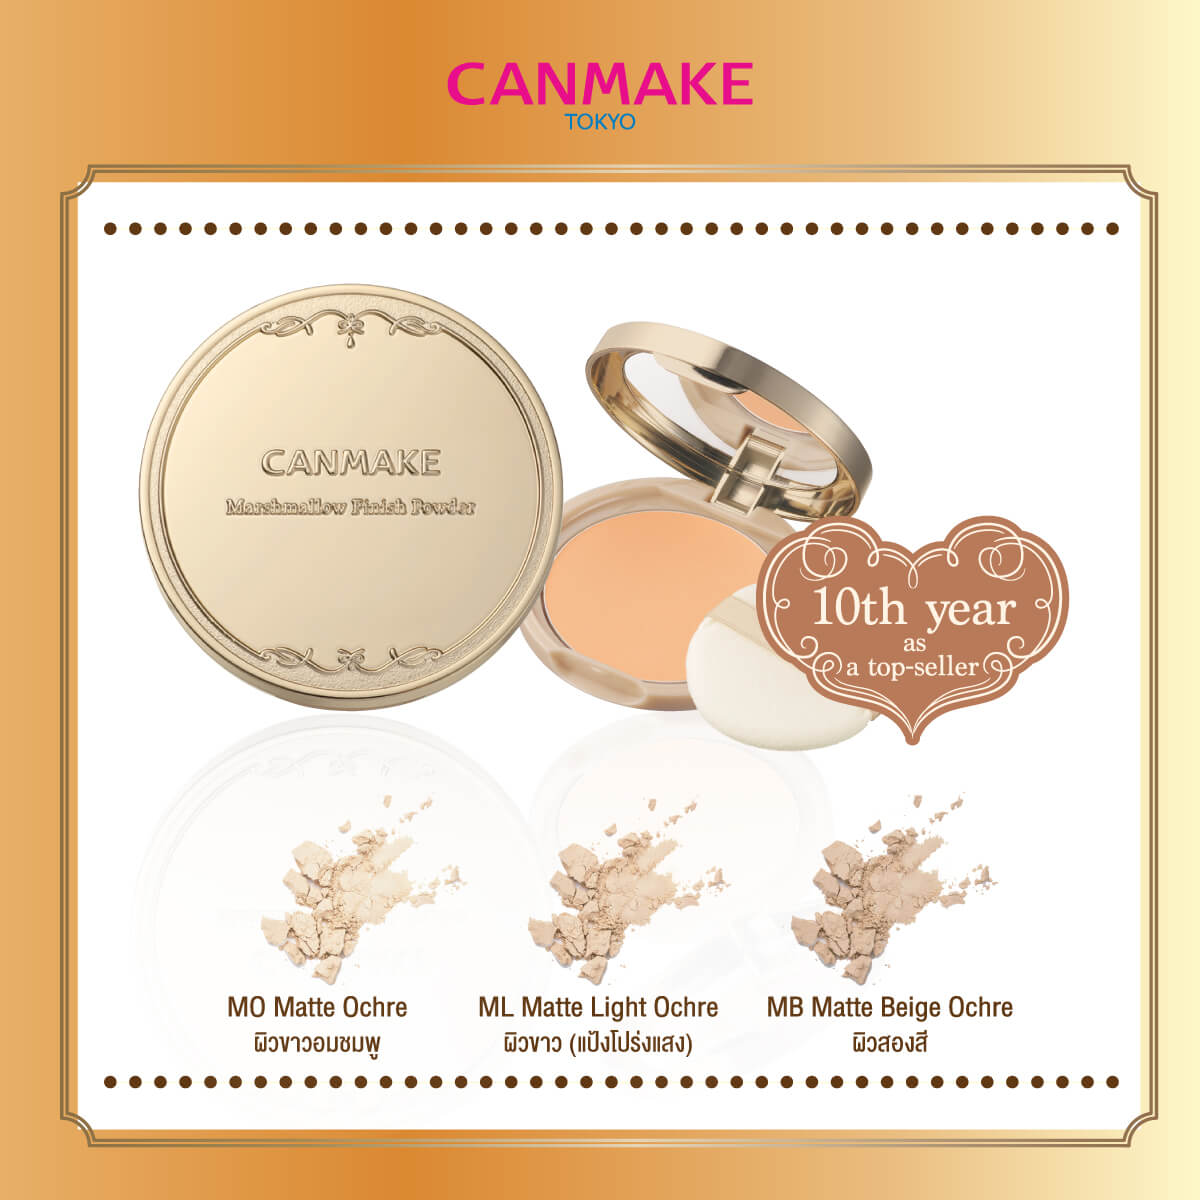 Canmake,Marshmallow Finish Powder,Canmake Marshmallow Finish Powder (New Package)